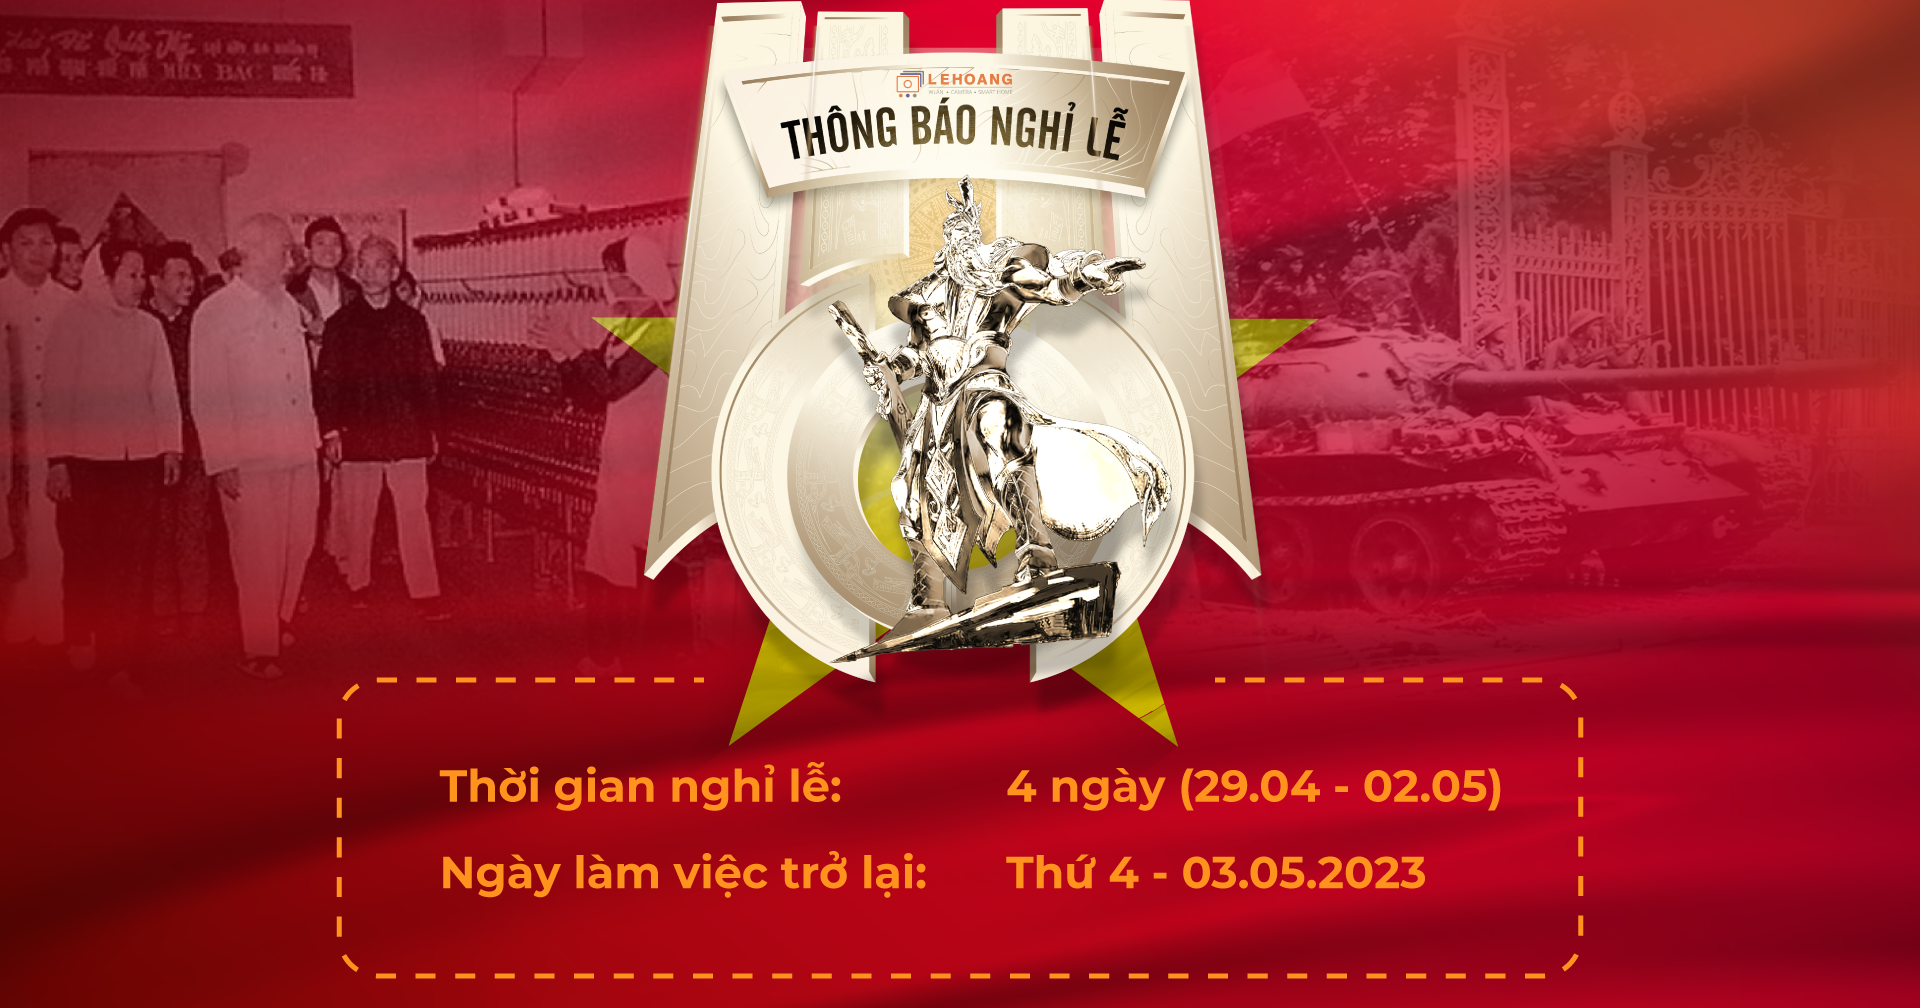 thong-bao-nghi-dai-le-Gio-to-va-30.04-01.05-hikvision-vietnam